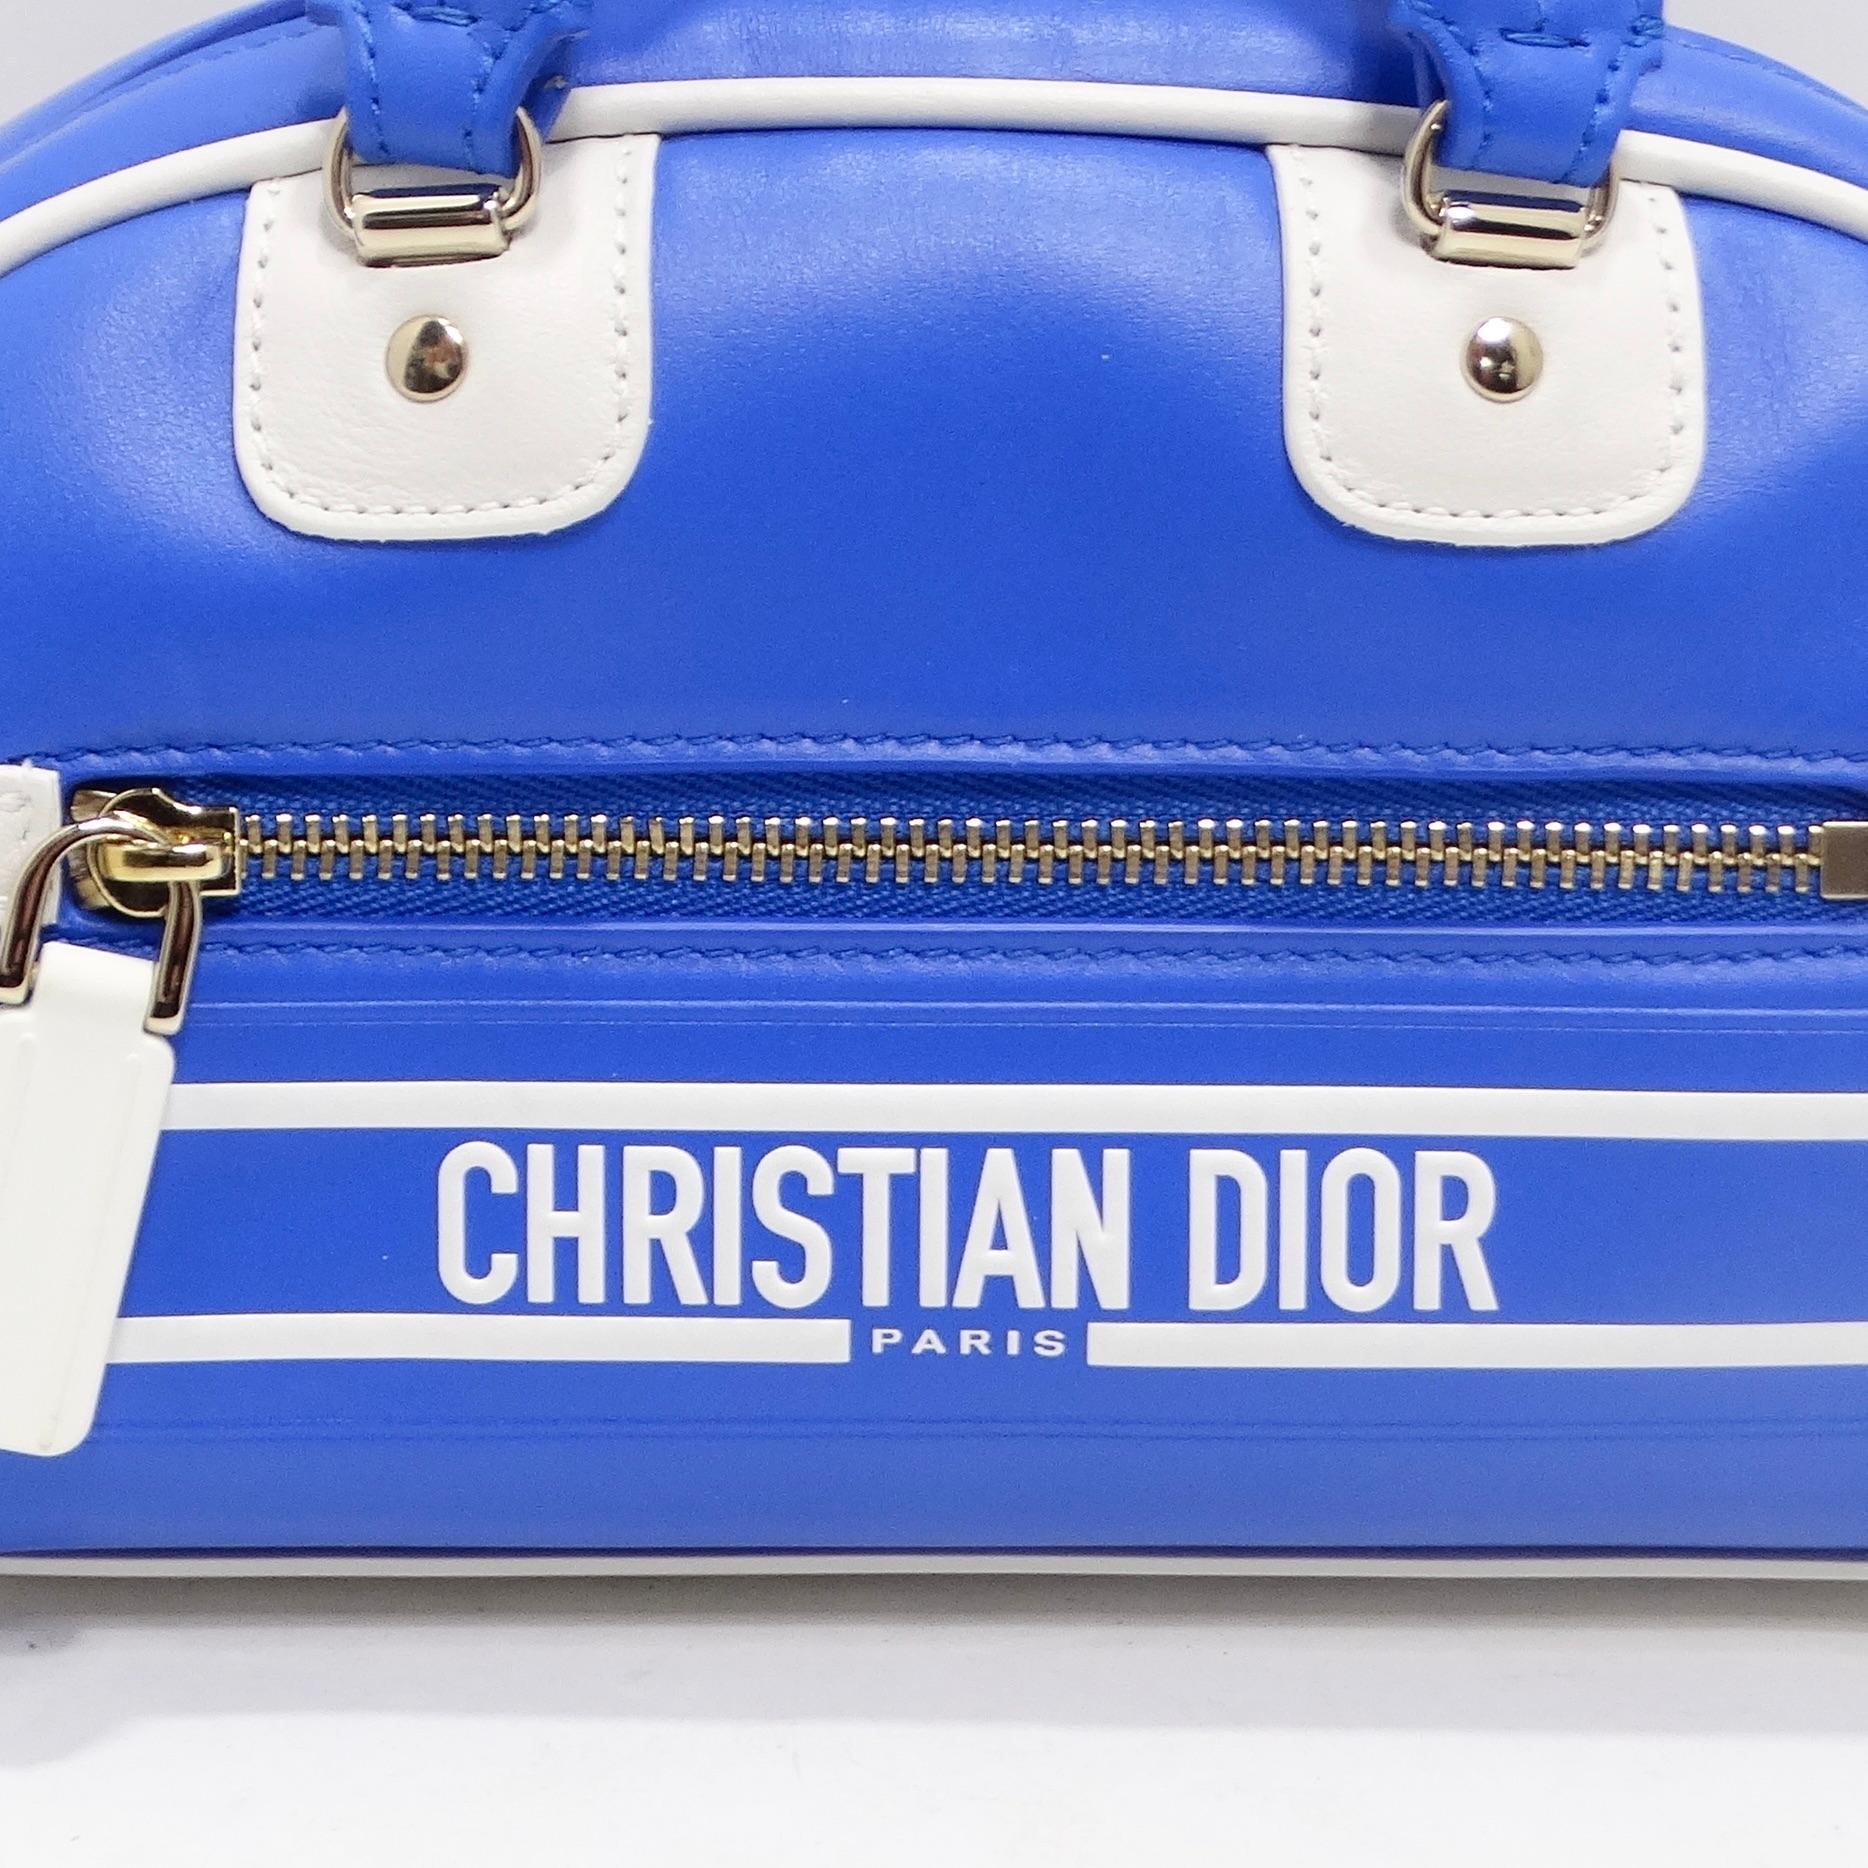 Voici le sac bowling Christian Dior Micro Vibe Zip en cuir bleu électrique - une véritable incarnation du luxe et du chic sportswear issue du défilé de l'été 2022. Ce chef-d'œuvre de taille micro met en valeur l'esprit couture de Maria Grazia